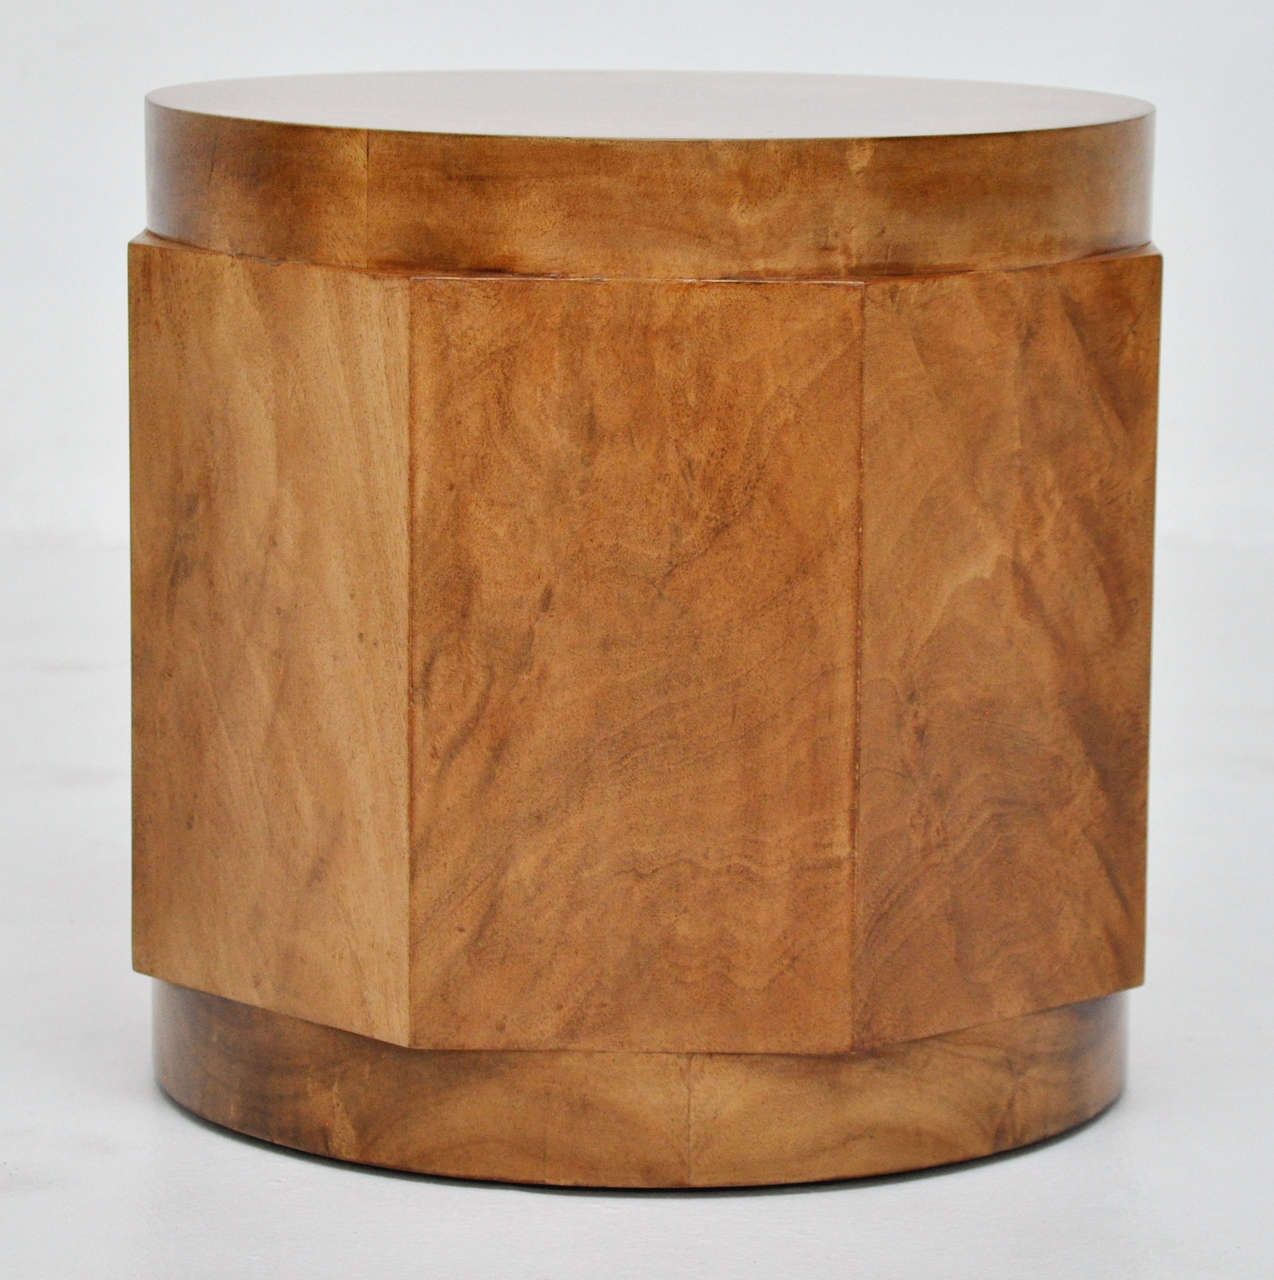 Burl wood drink table by Edward Wormley for Dunbar.  Fully restored.